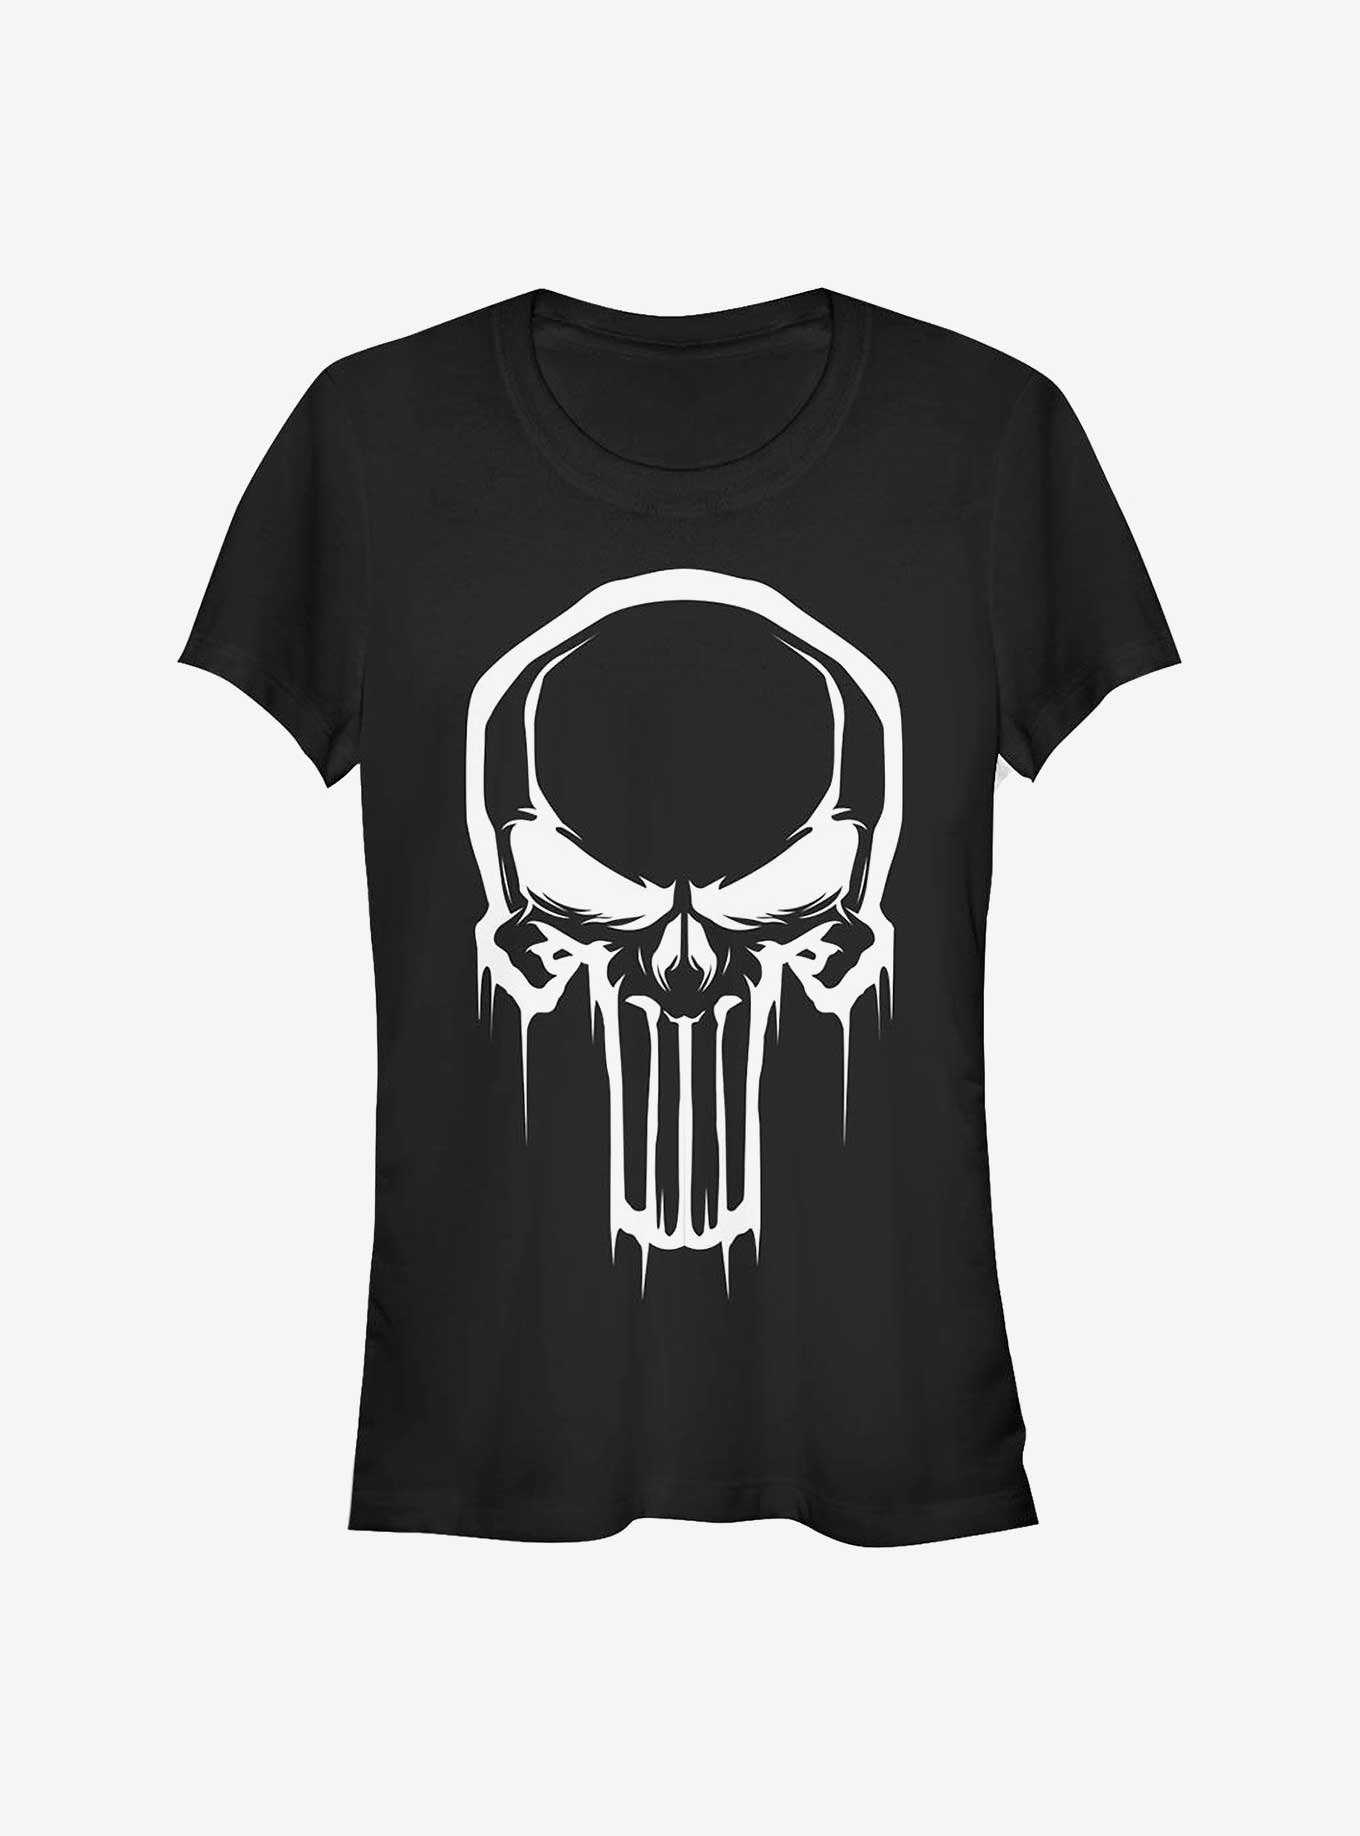 Marvel Men's Punisher Skull Logo Hoodie (Print On Demand